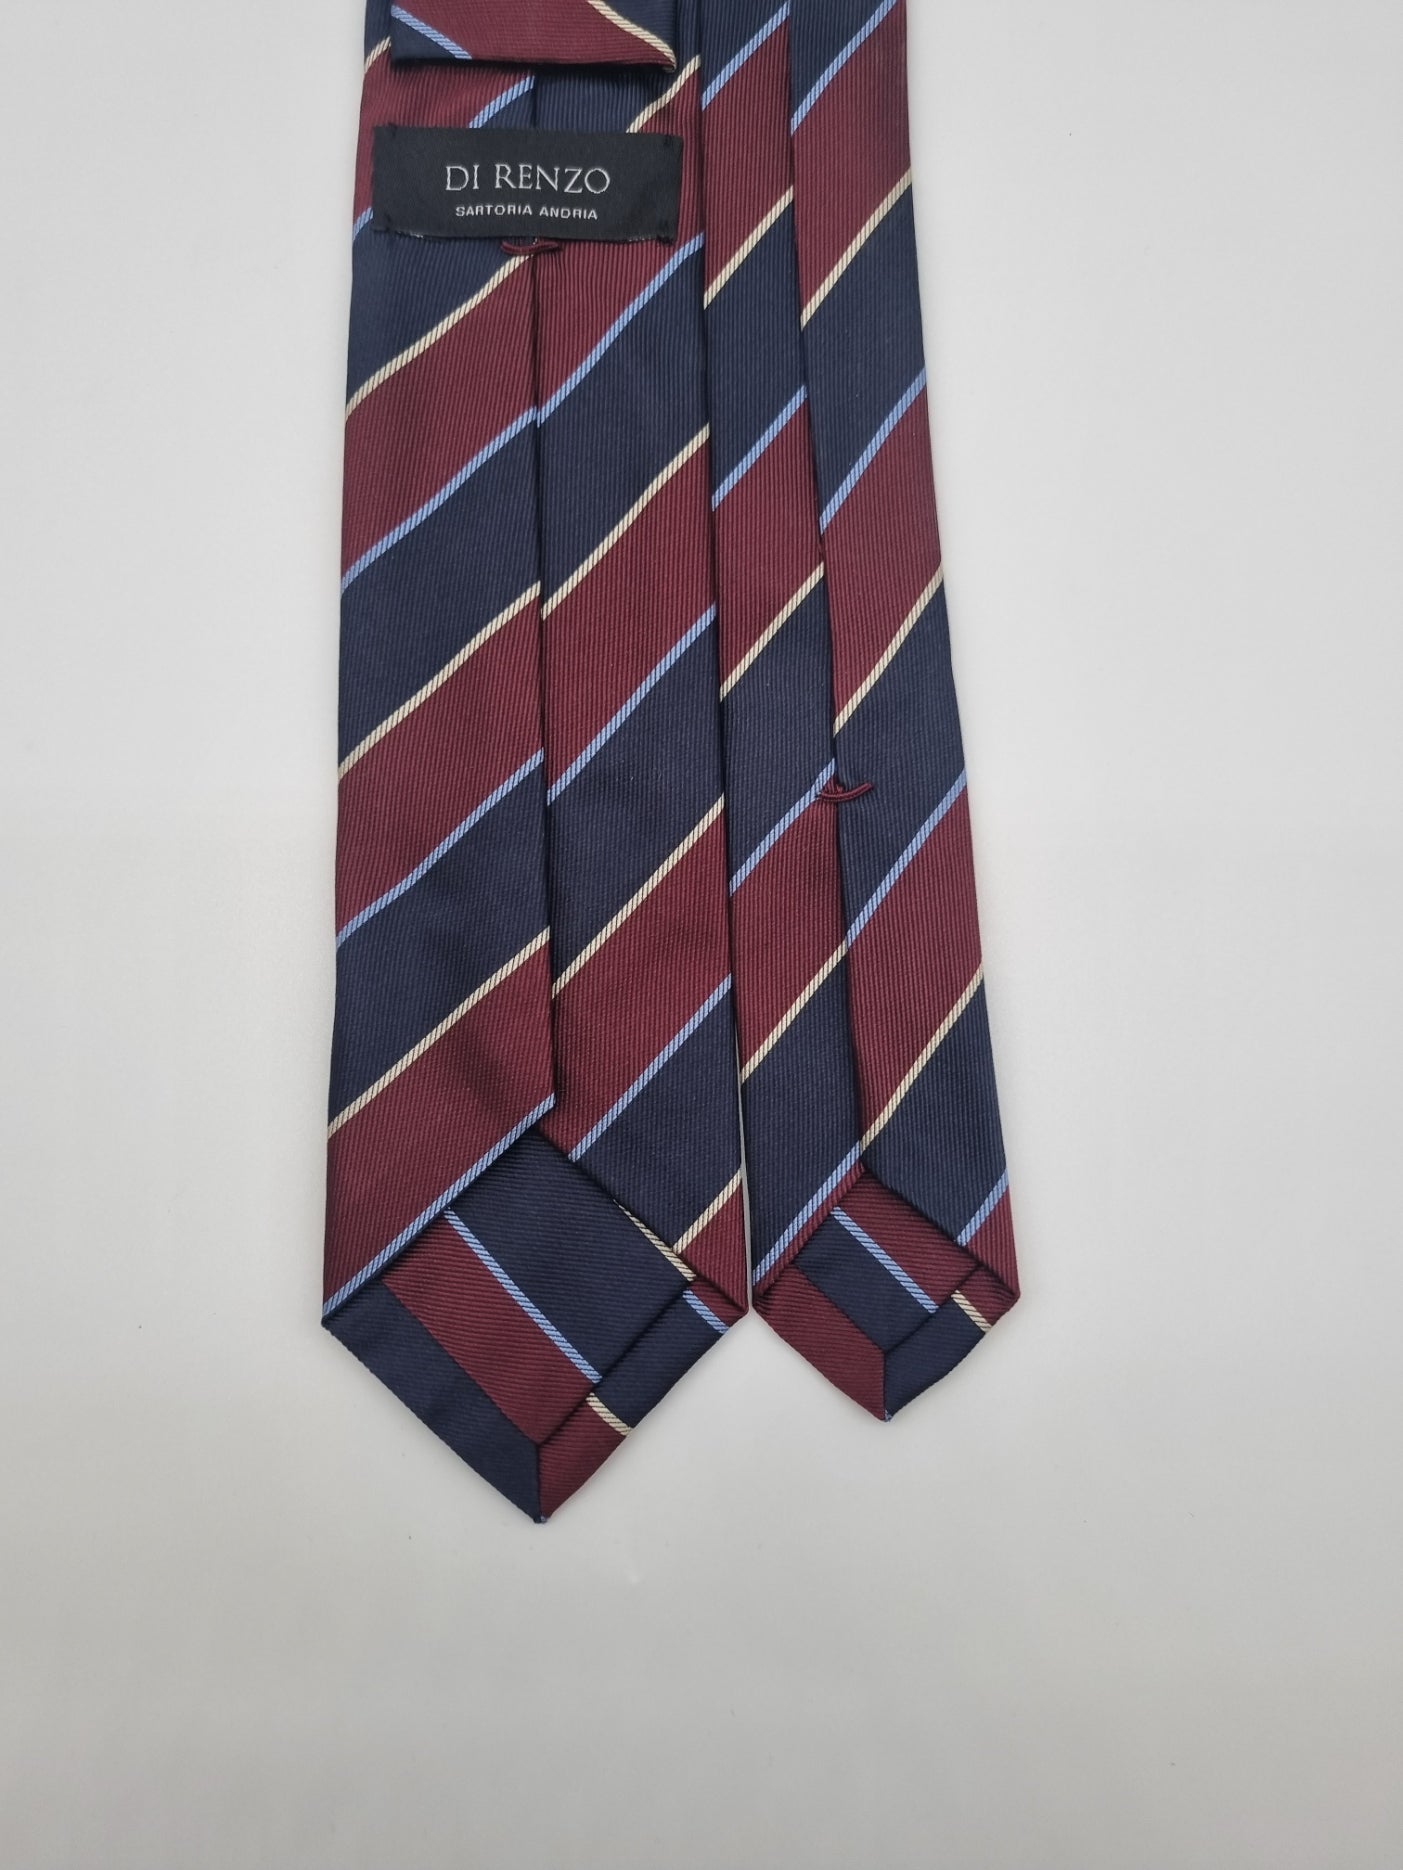 Cravatta sartoriale sette pieghe